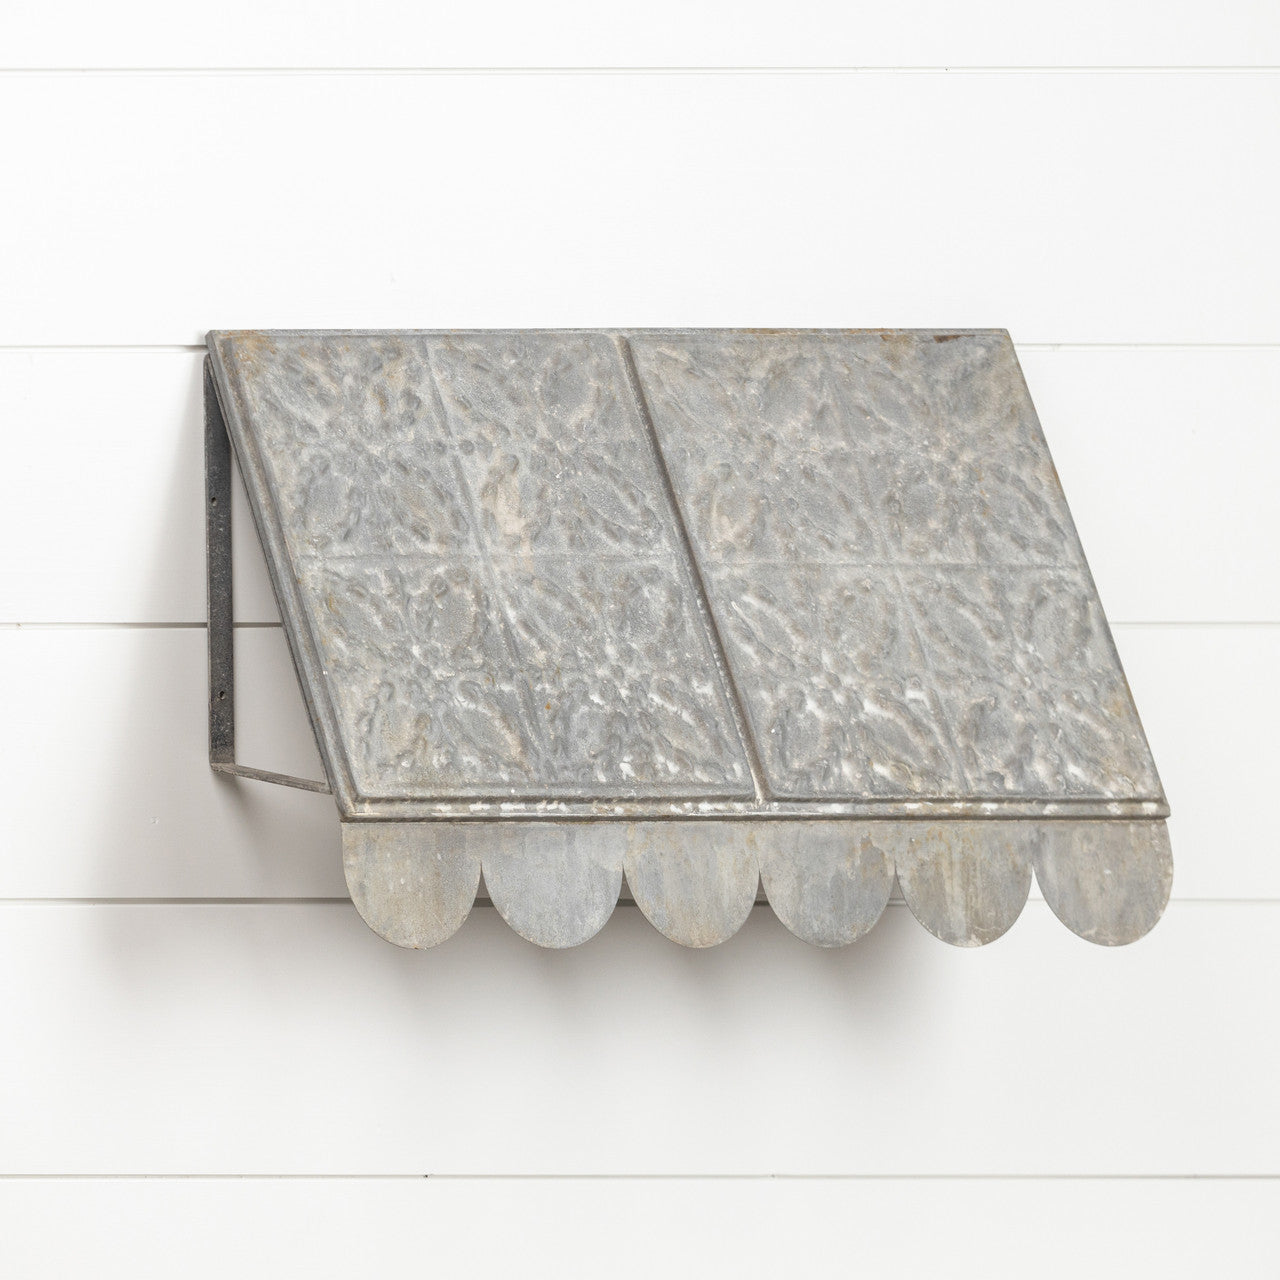 Antiqued Grey Metal Hexagon Ceiling Tin Tile Awning 24"